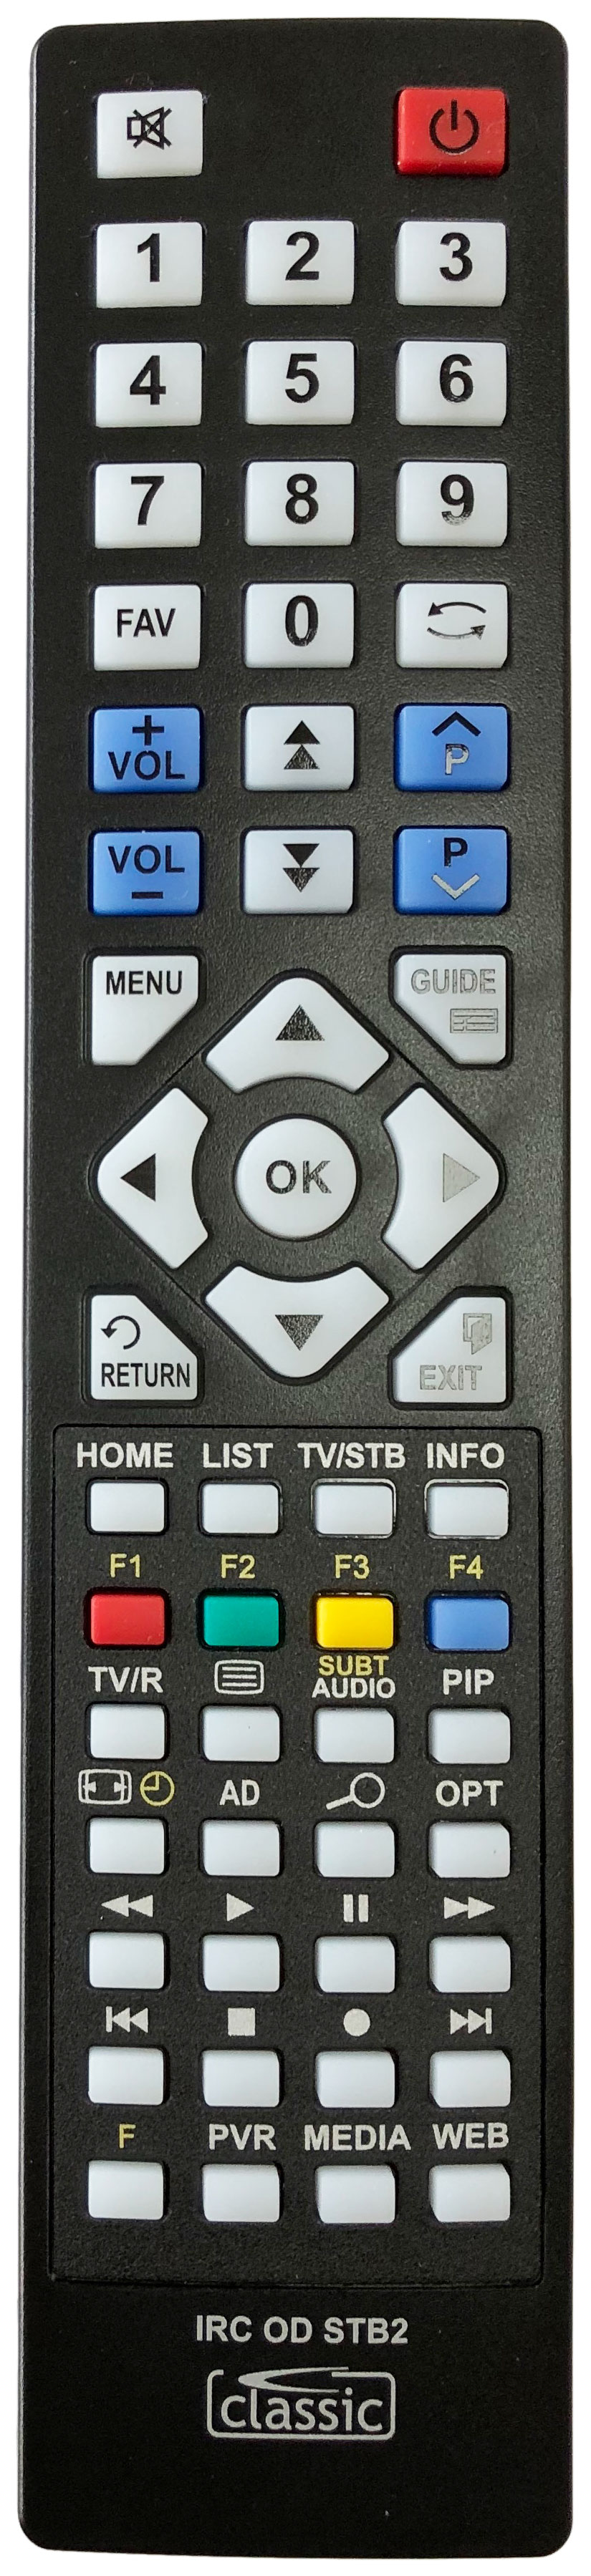 Humax FVP-4000T MOCHA Remote Control Alternative